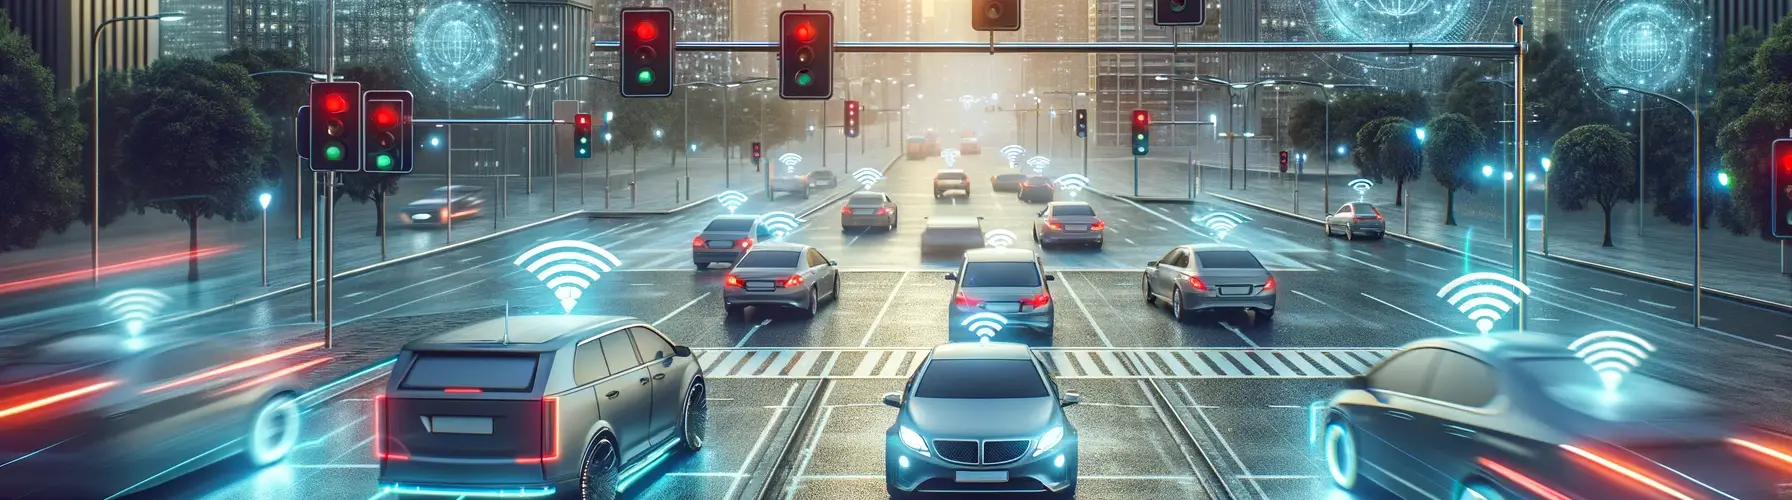 Cette image dépeint le concept de véhicules autonomes et de communication sans fil en milieu urbain.